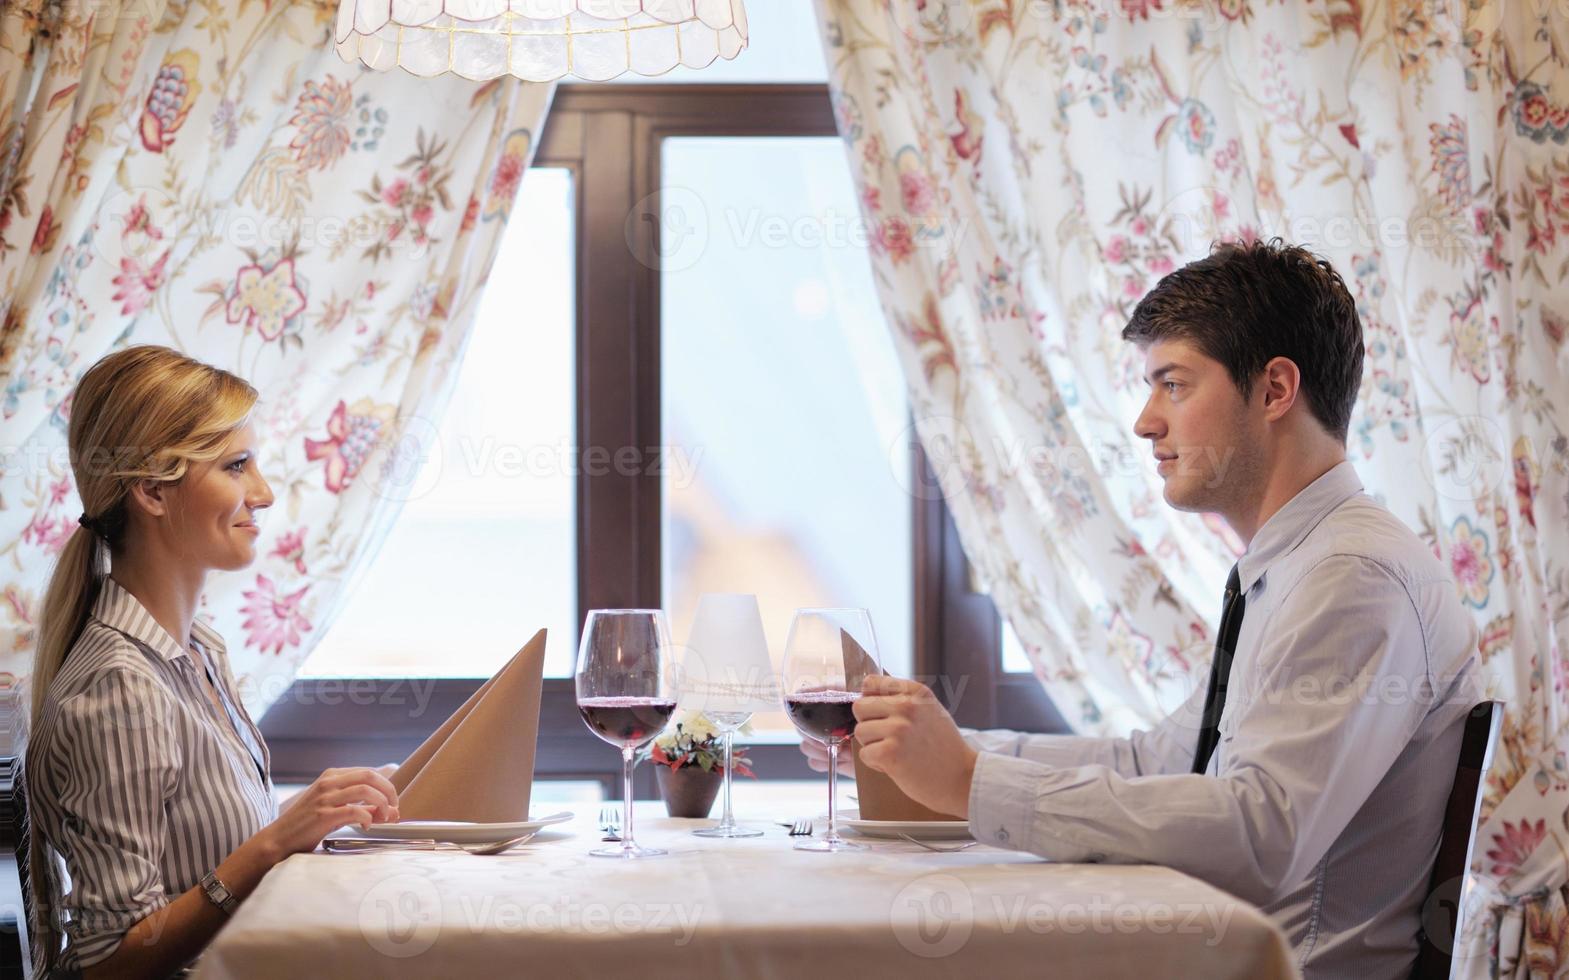 jeune couple en train de dîner dans un restaurant photo